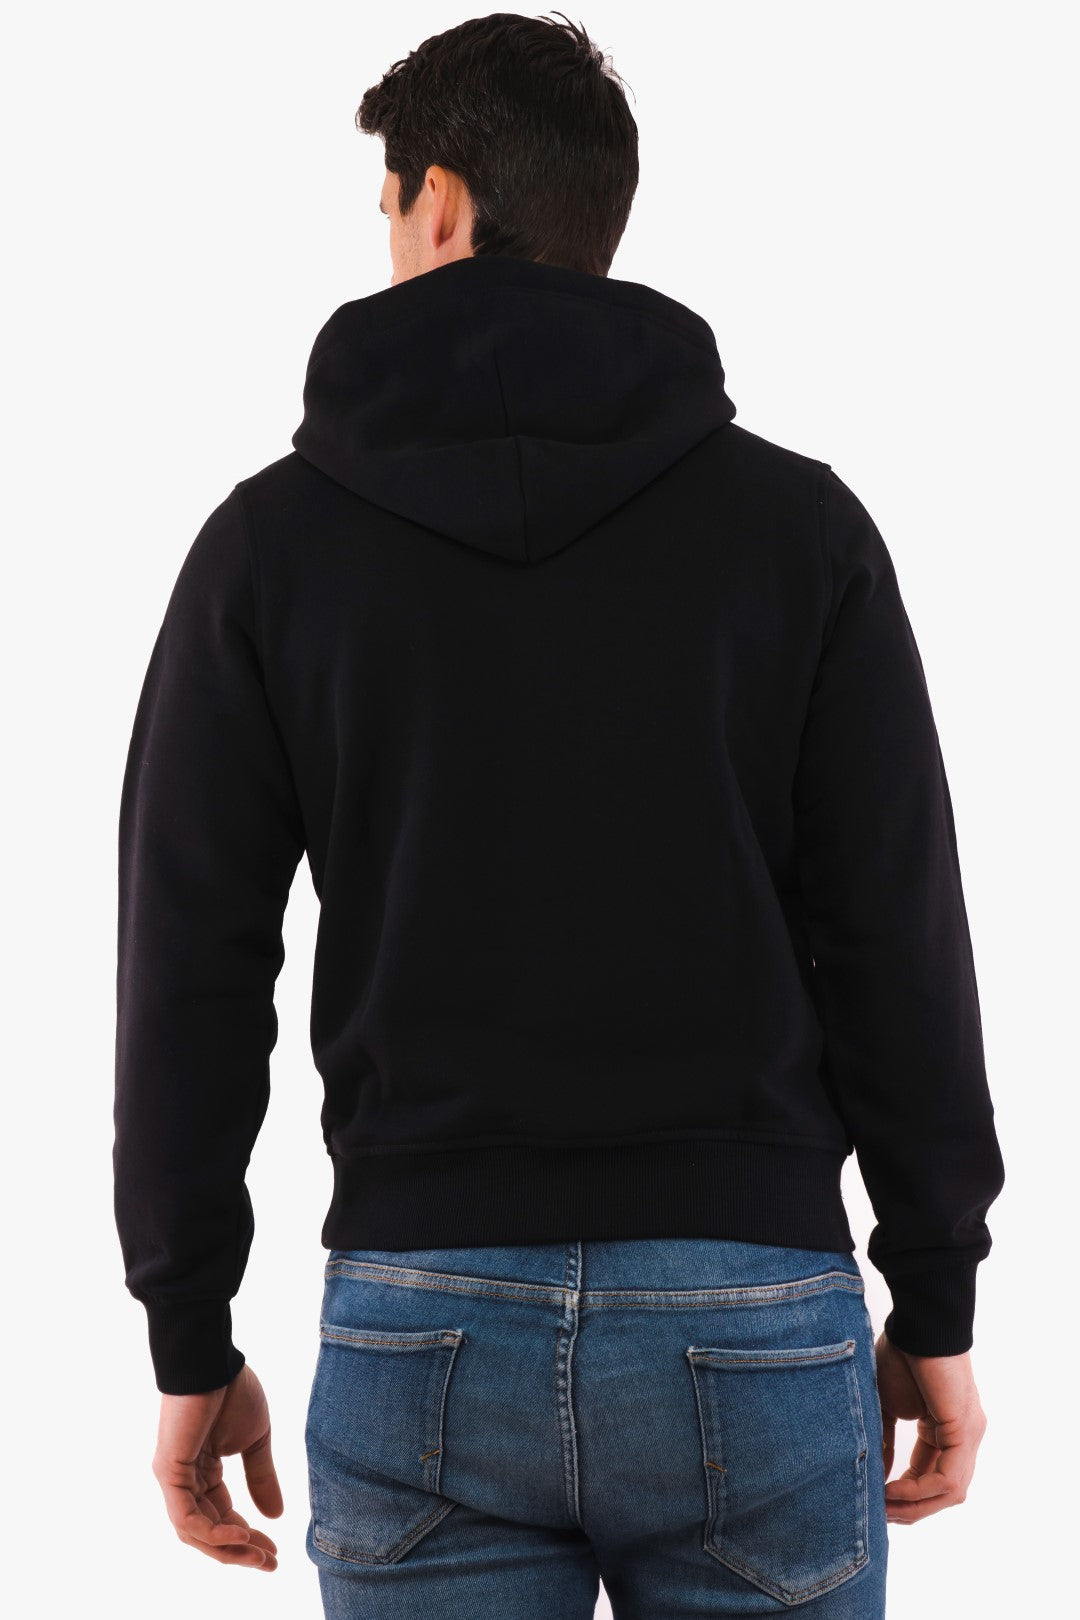 Diesel sweater in Black color